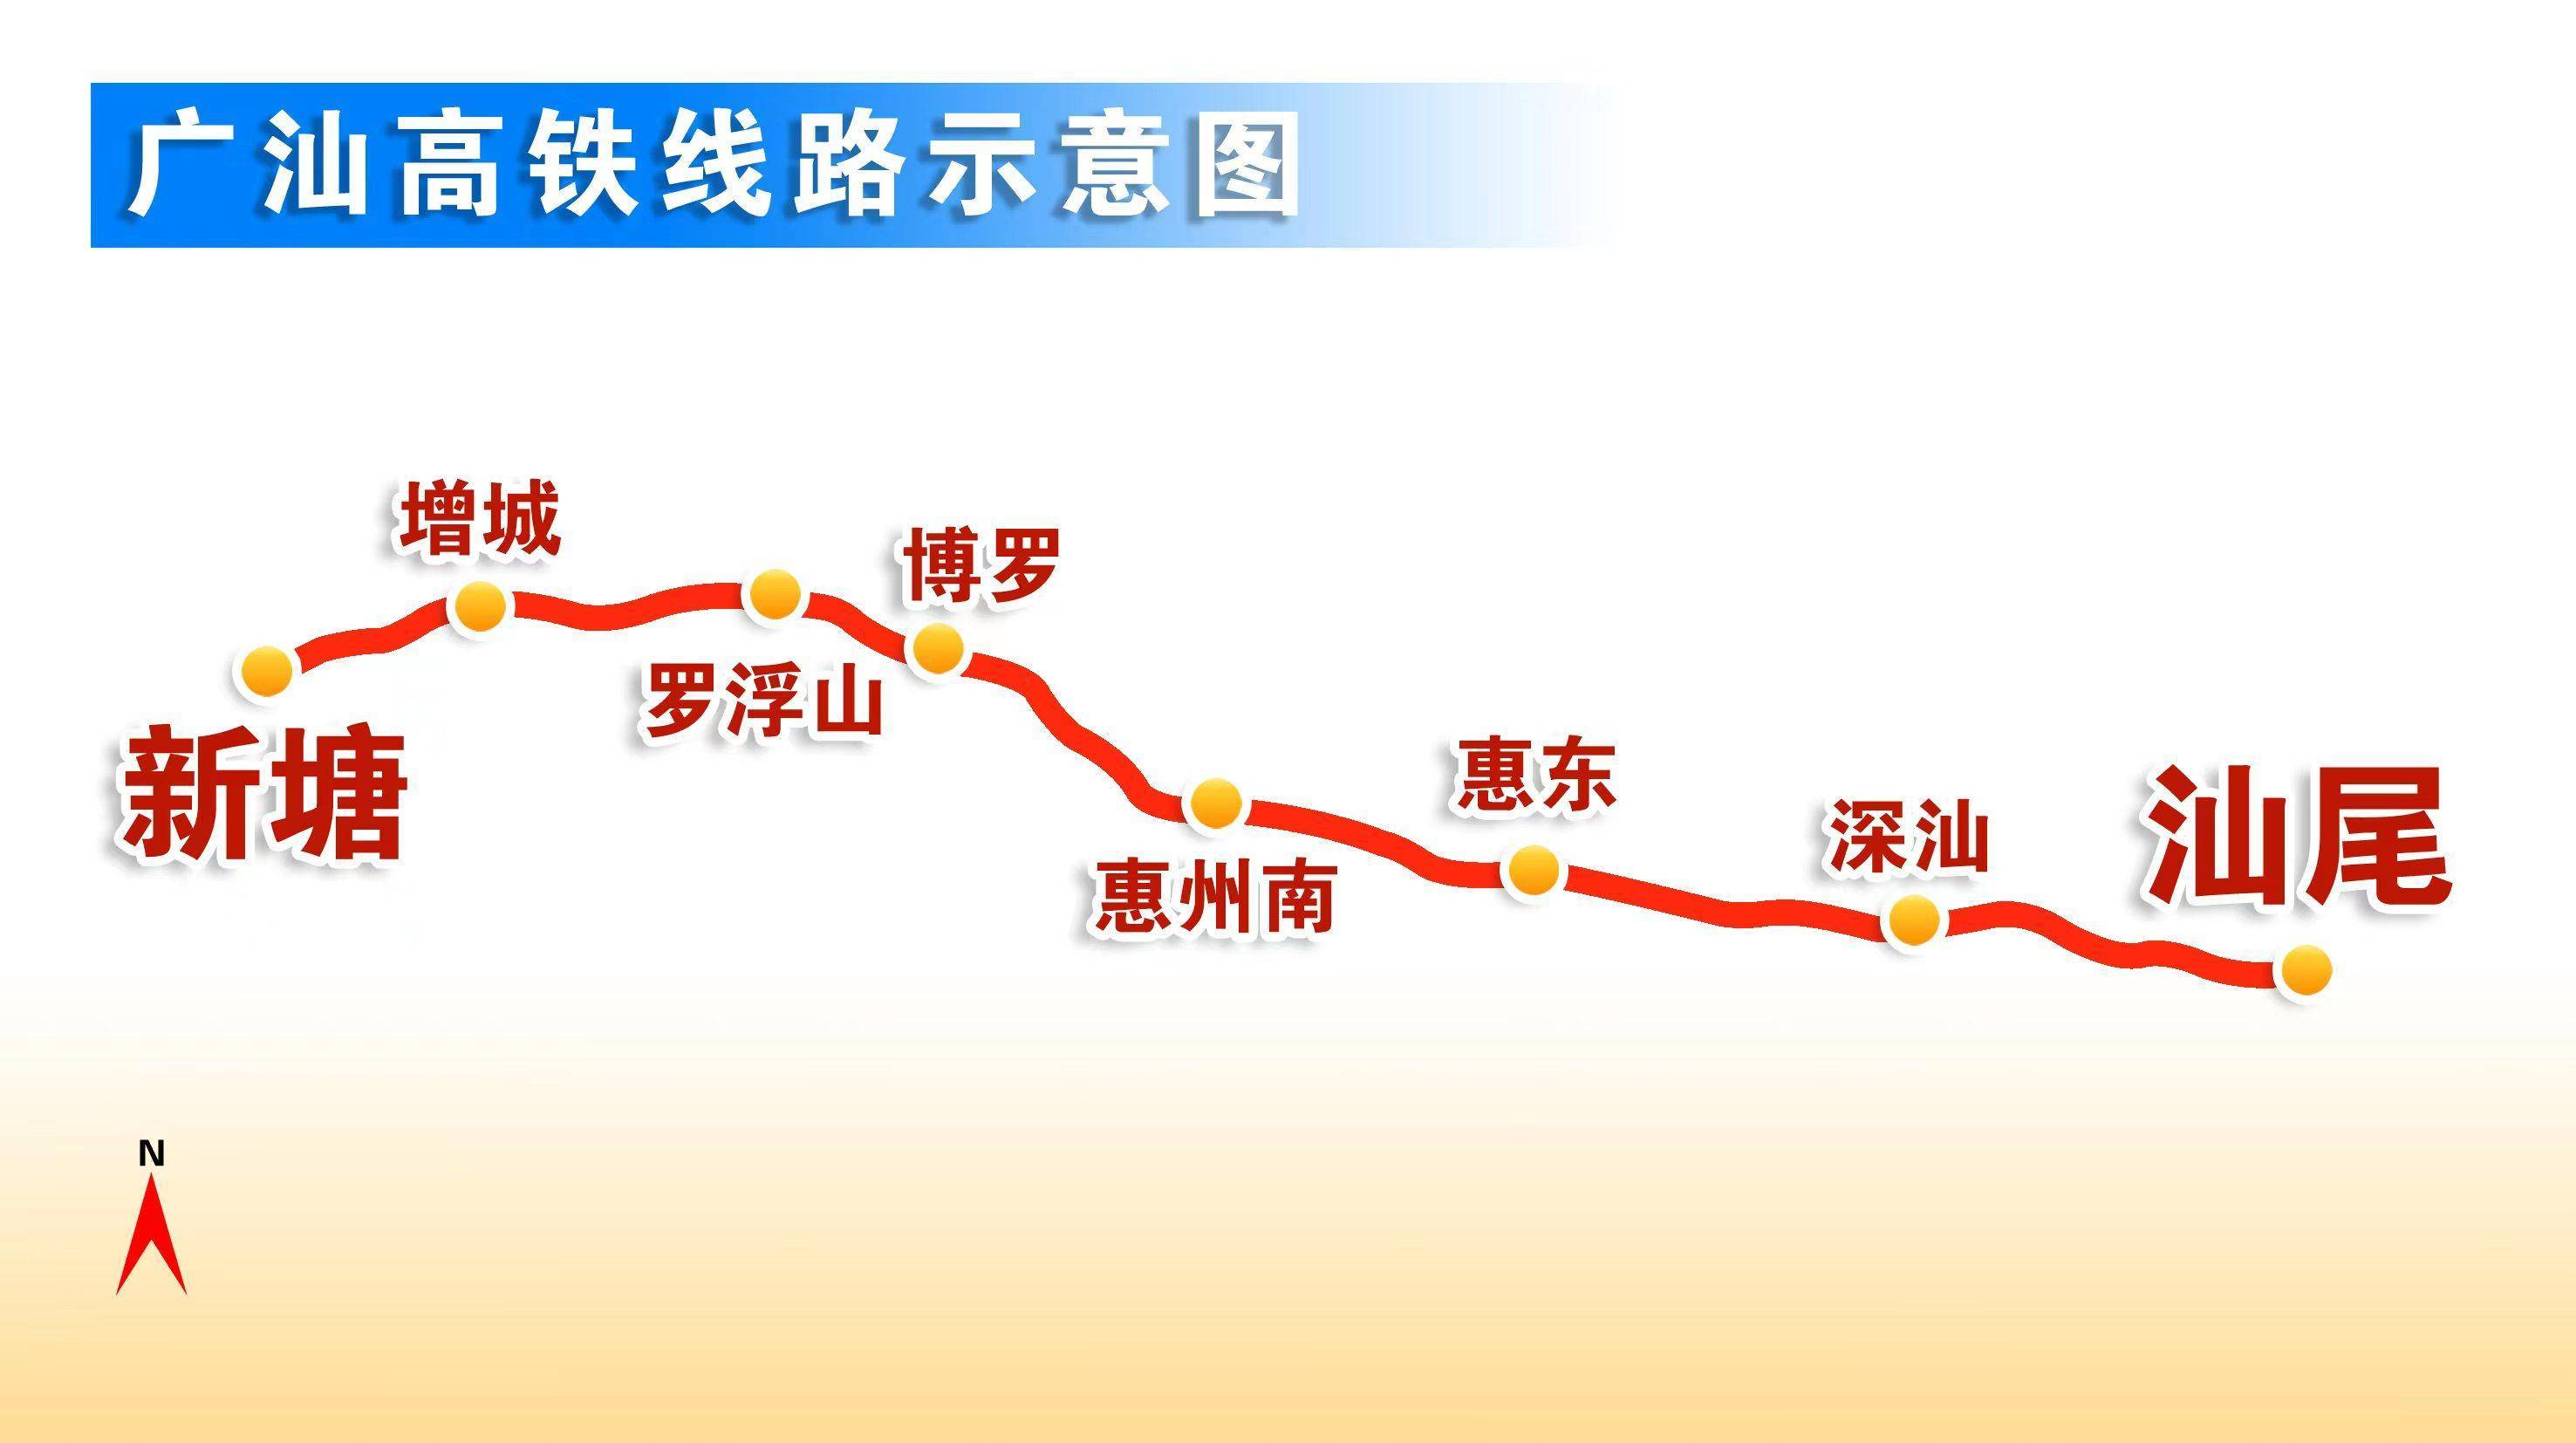 广汕高铁西起广州新塘站,途经广州,惠州,深汕合作区